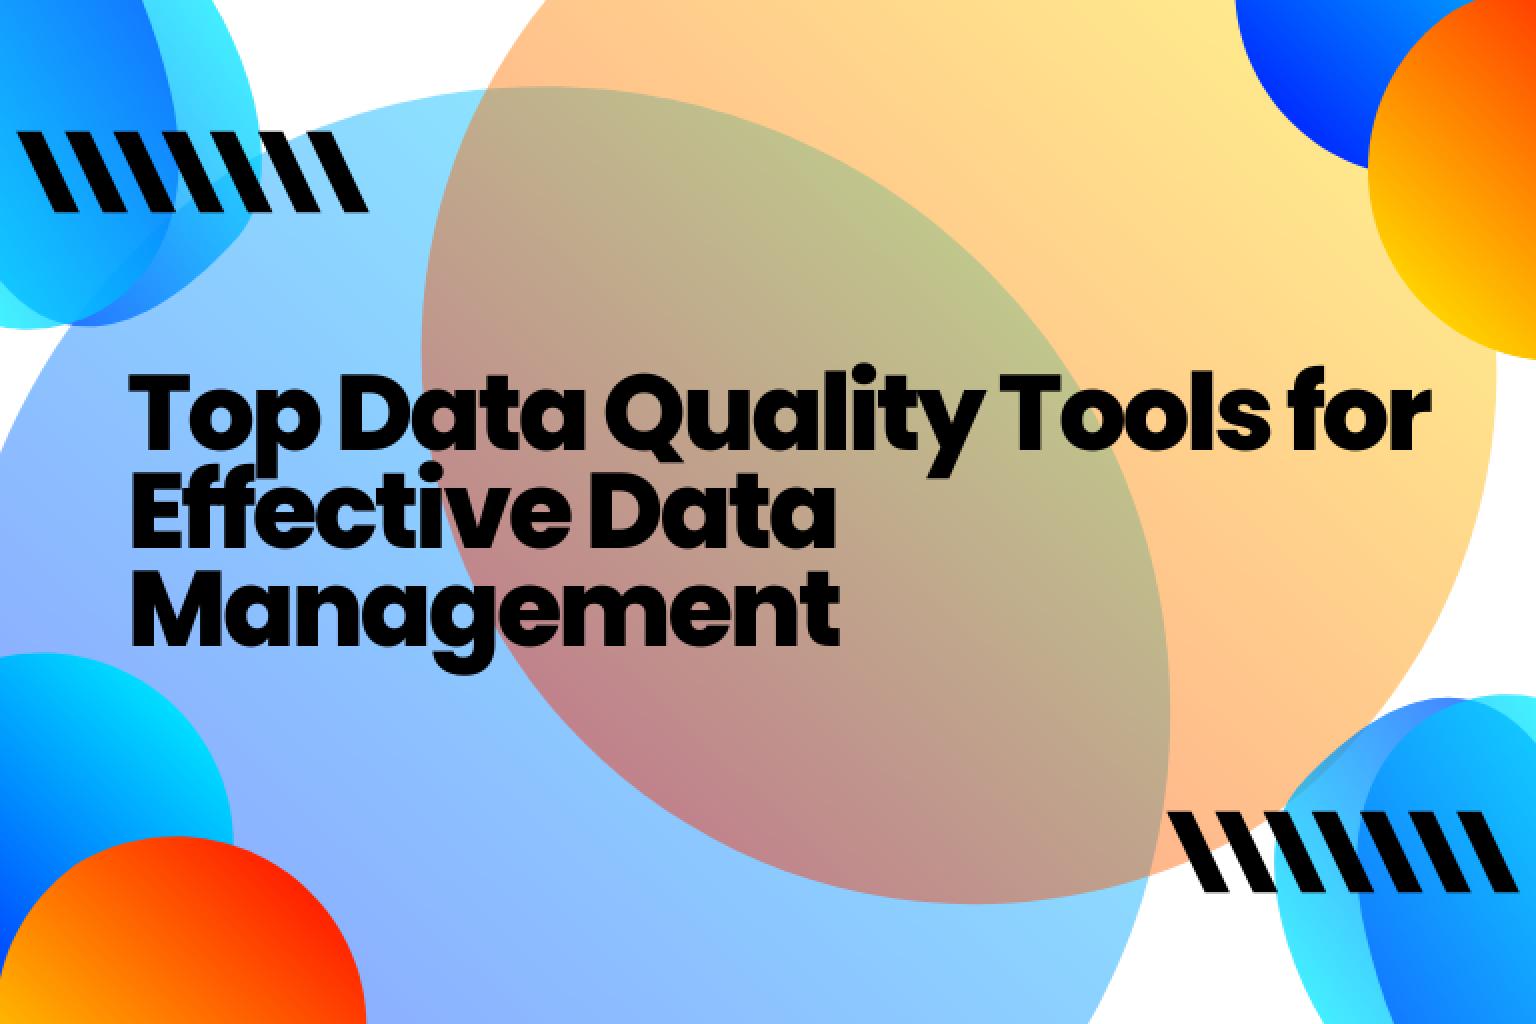 데이터가 정확하고 완전하며 일관되도록 보장하고 정보에 입각한 결정을 내릴 수 있는 최고의 데이터 품질 도구를 찾아보세요.